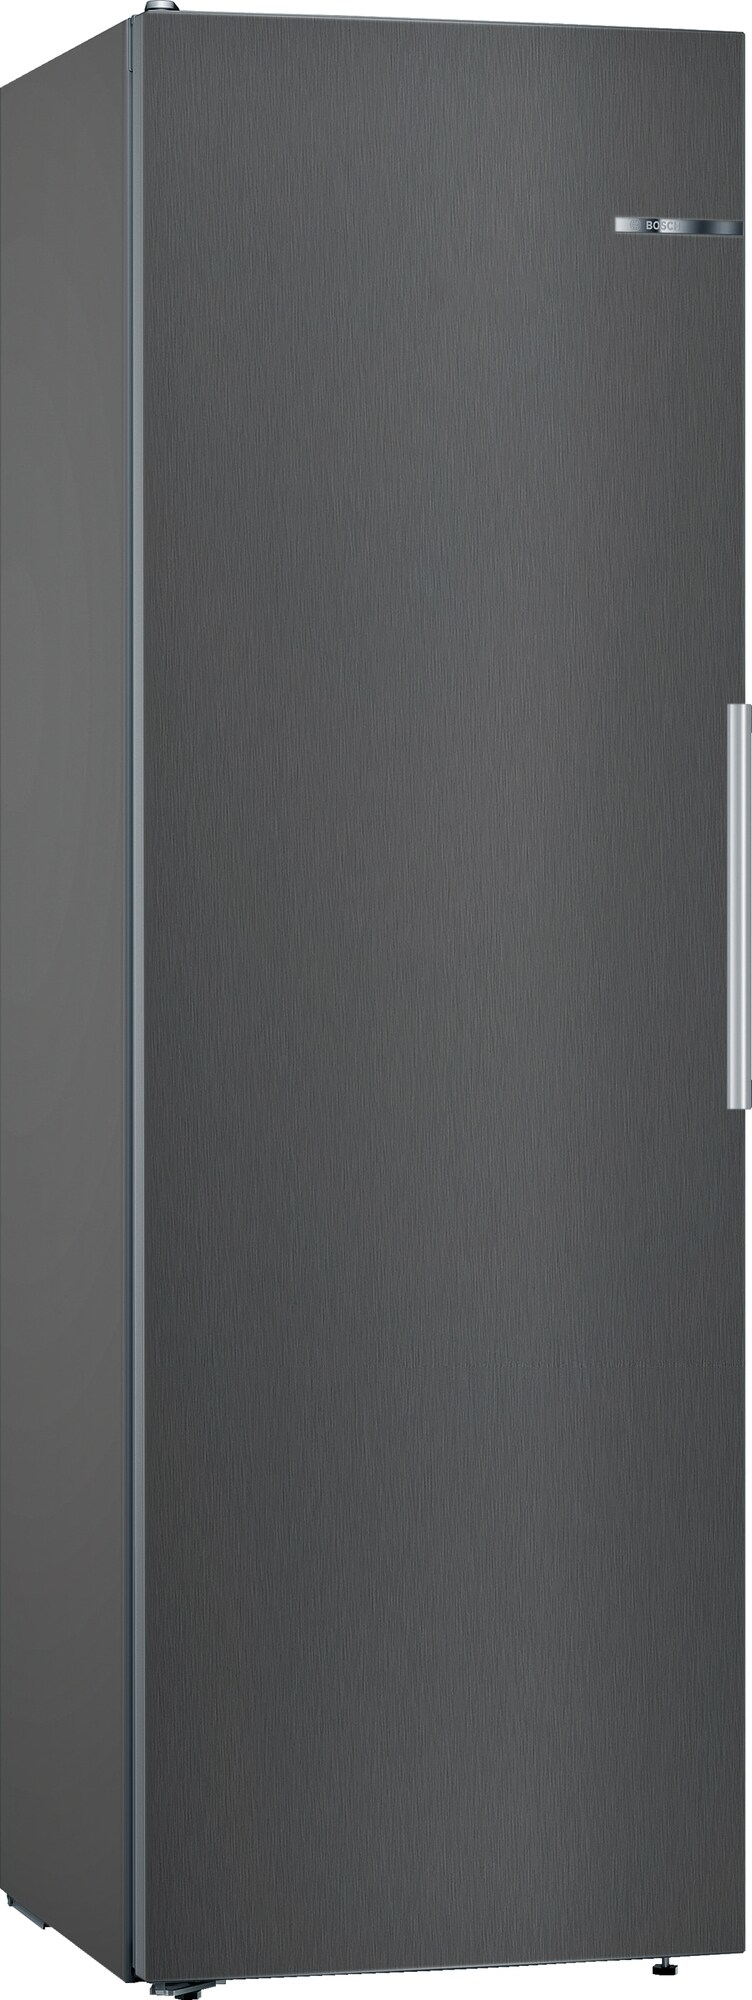 Billede af Bosch køleskab KSV36VXEP (sort)